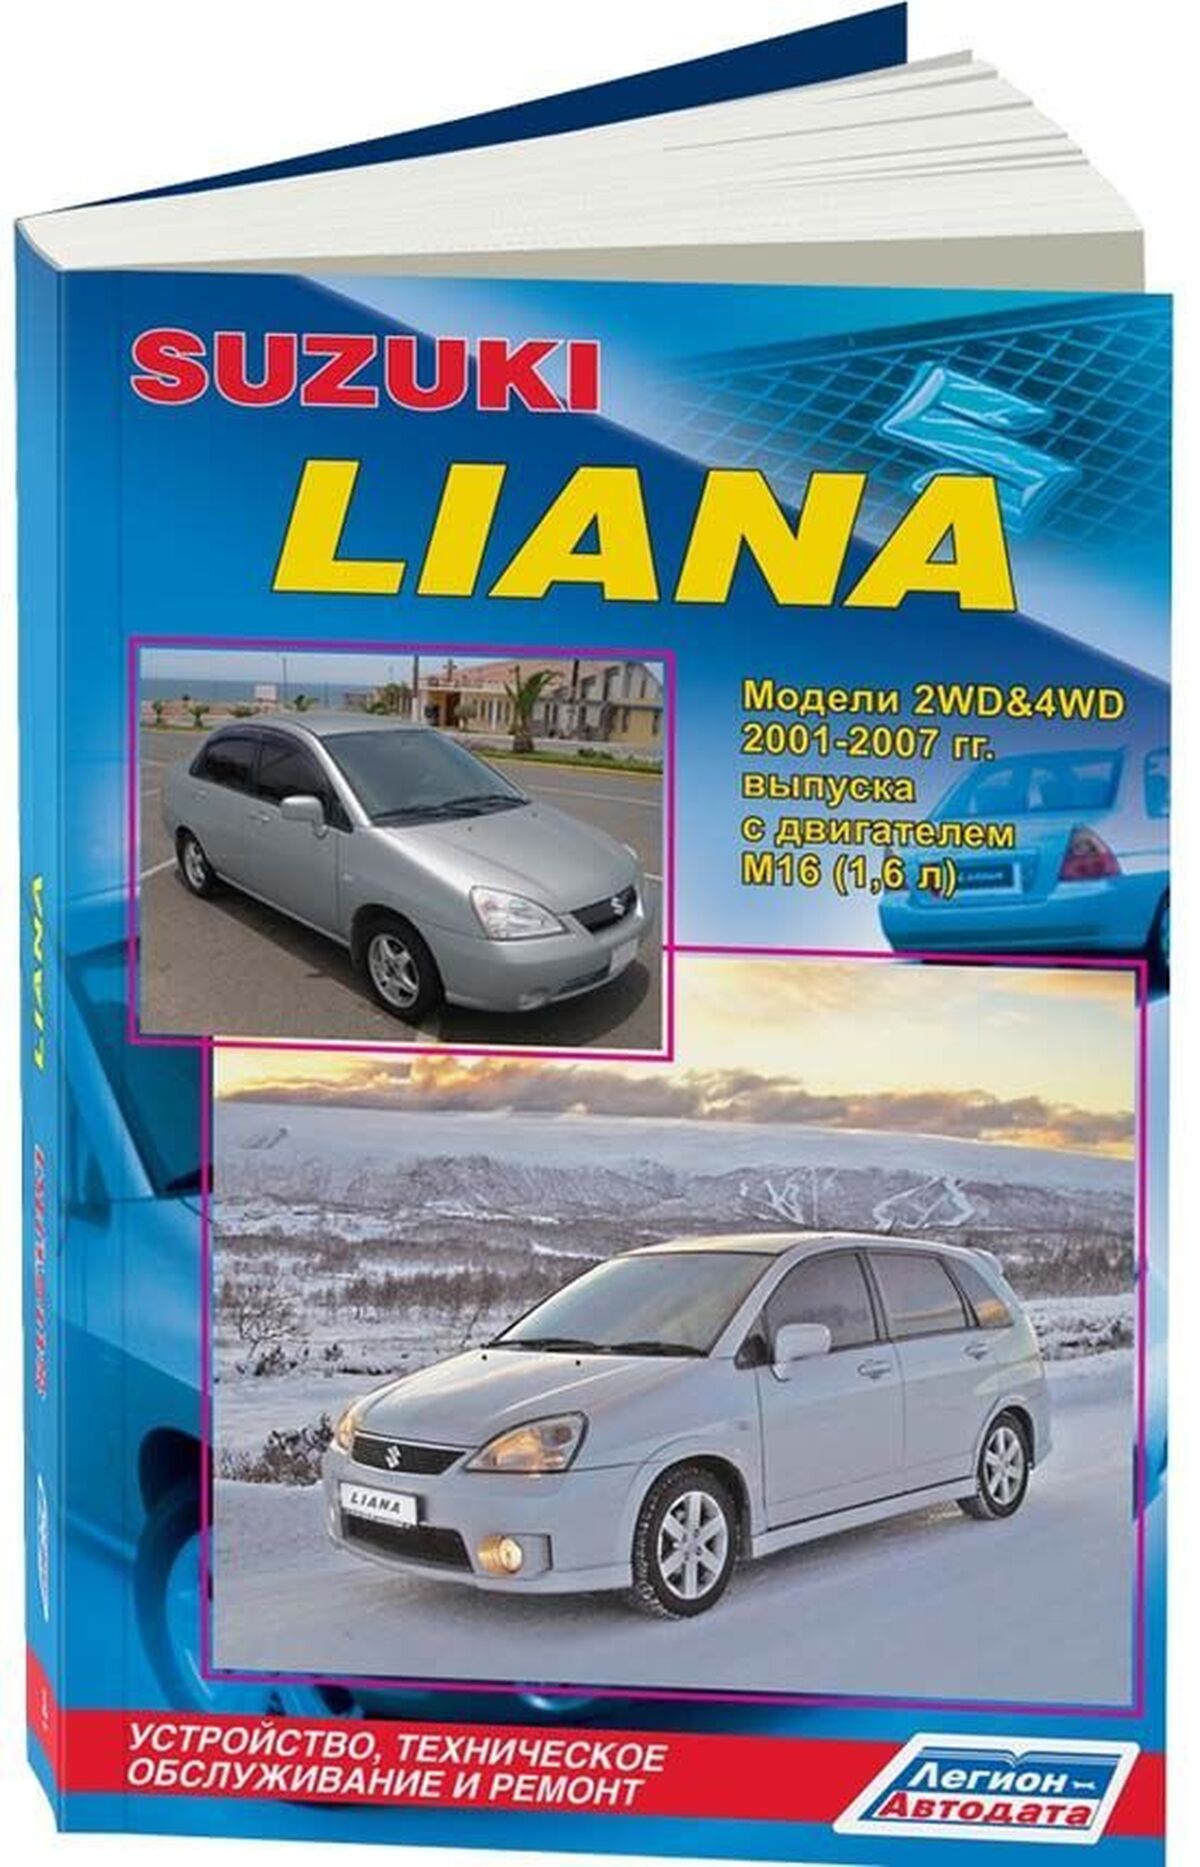 Книга: SUZUKI LIANA (б) 2001-2007 г.в., рем., экспл., то | Легион-Aвтодата